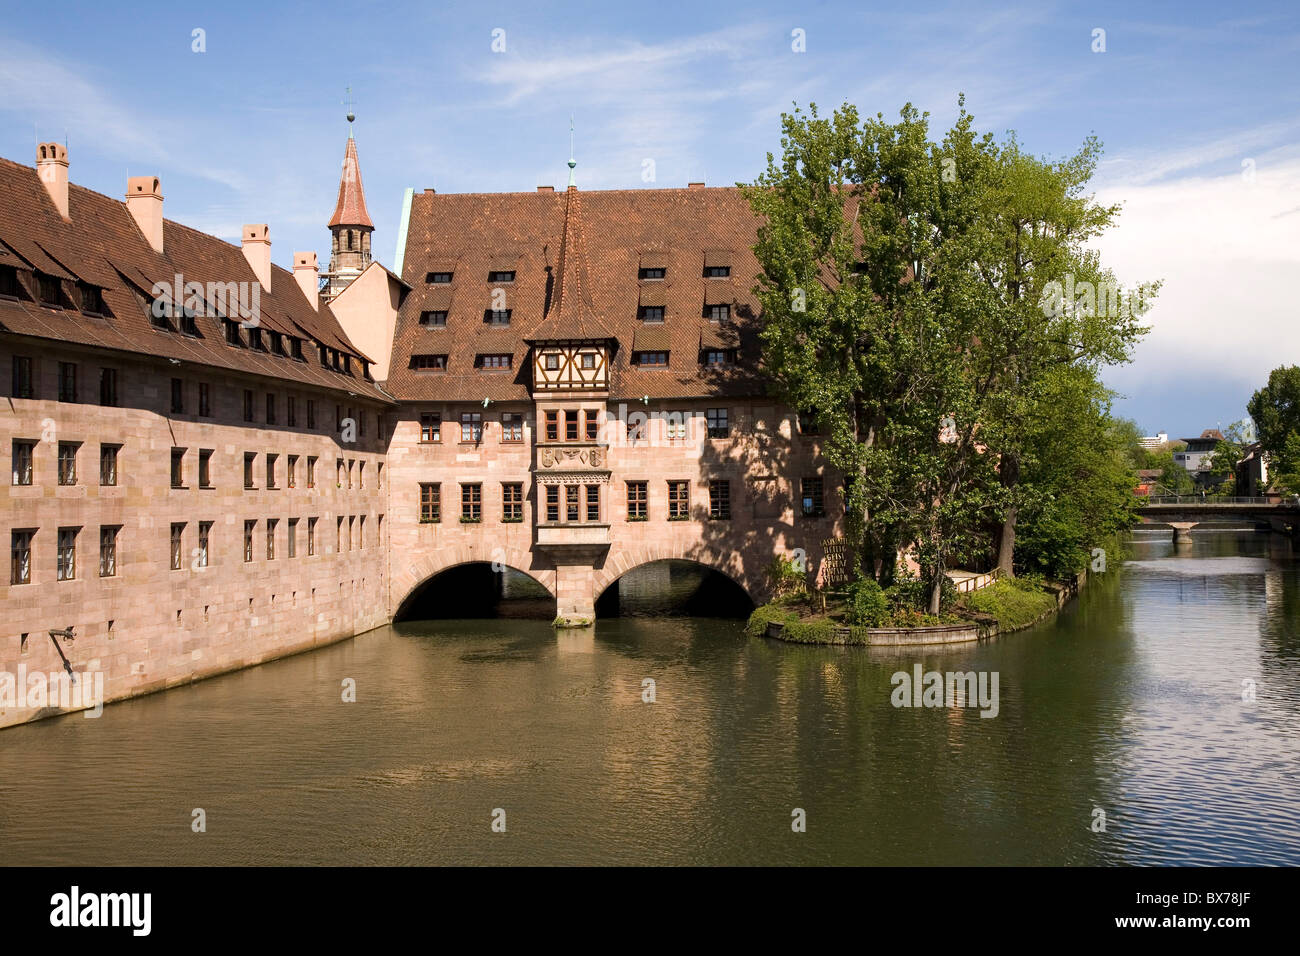 Die Heiligen-Geist-Spital, eines der größten mittelalterlichen Krankenhäuser Europas, durch den Fluss Pegnitz in Nuremberga, Deutsch Stockfoto